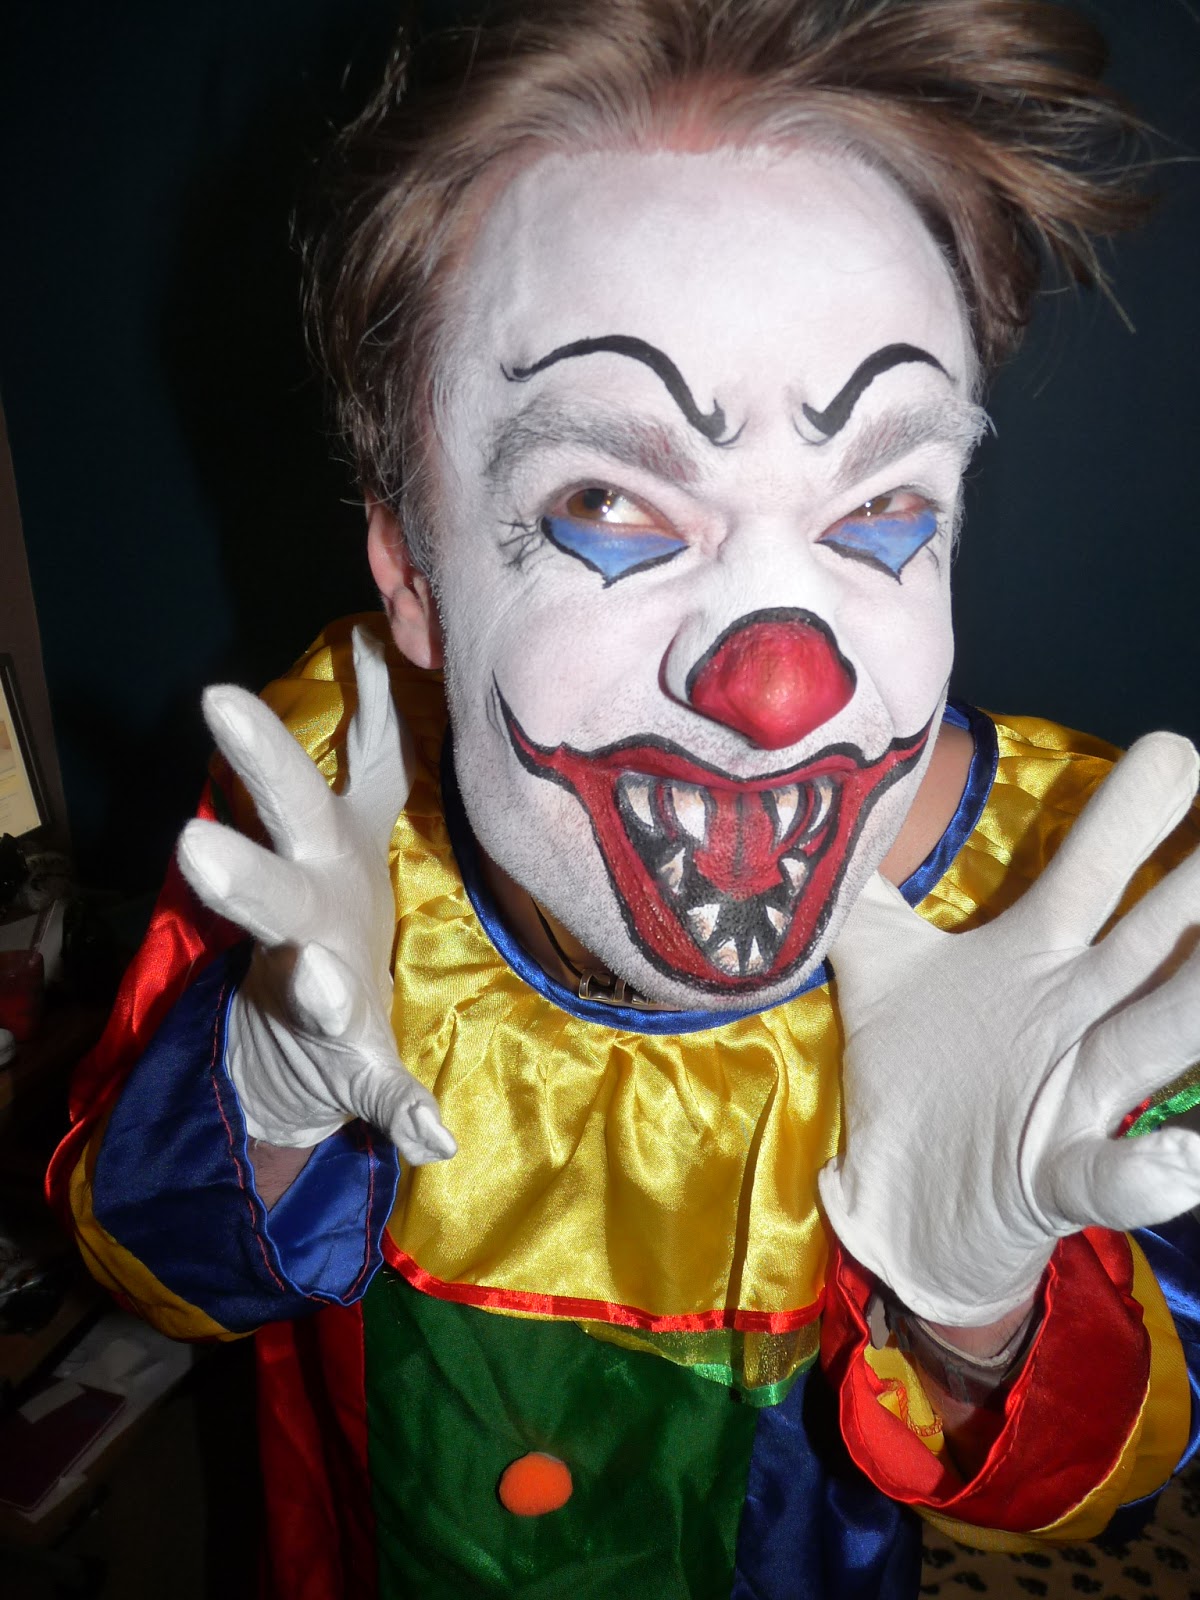 Face Paint Parties blurbs on a blog...: Harmless little clown?